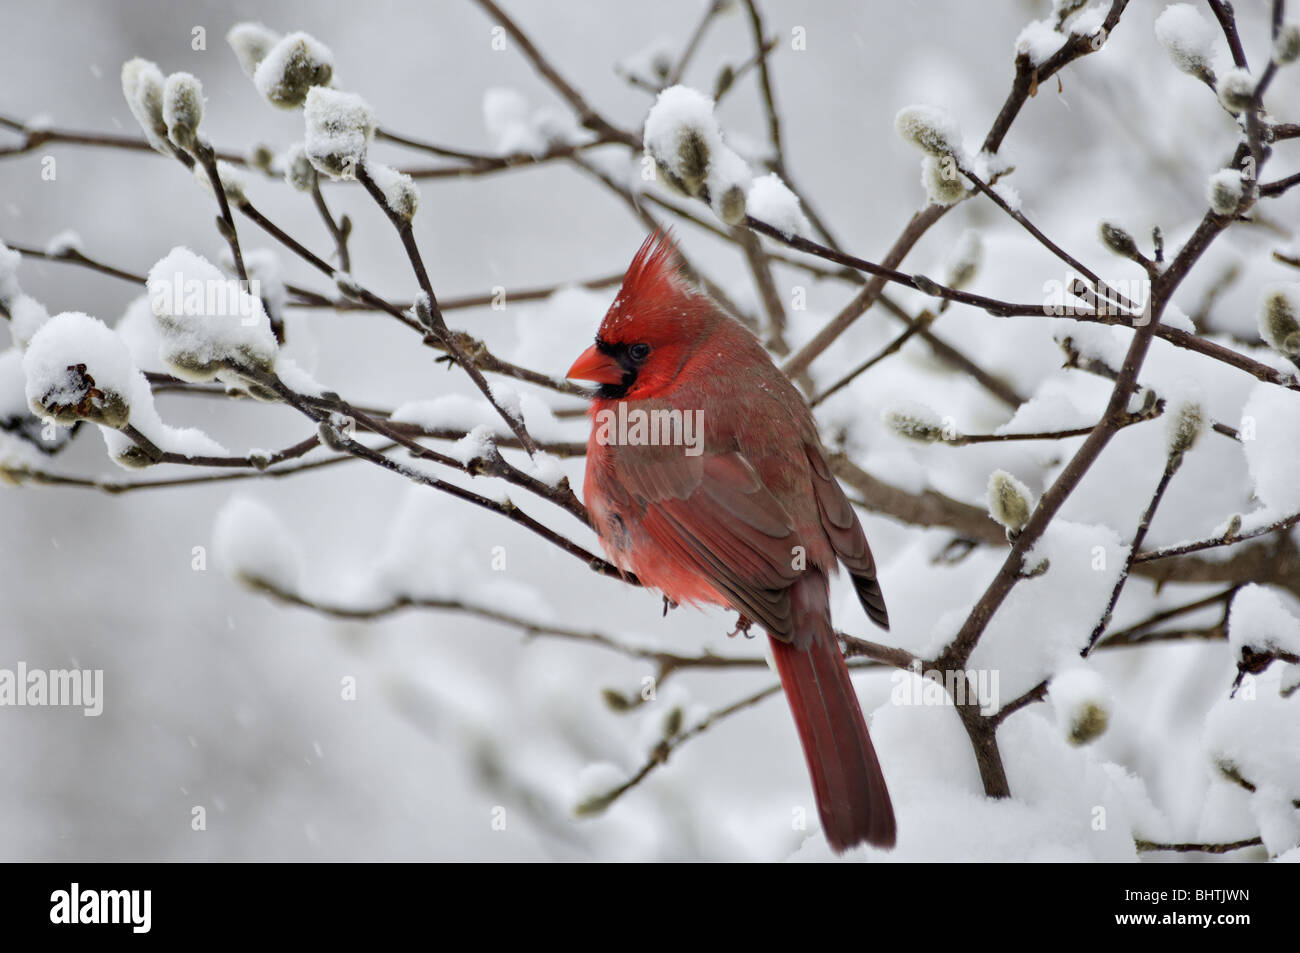 Cardinal rouge perché sur la neige dans la direction générale Banque D'Images